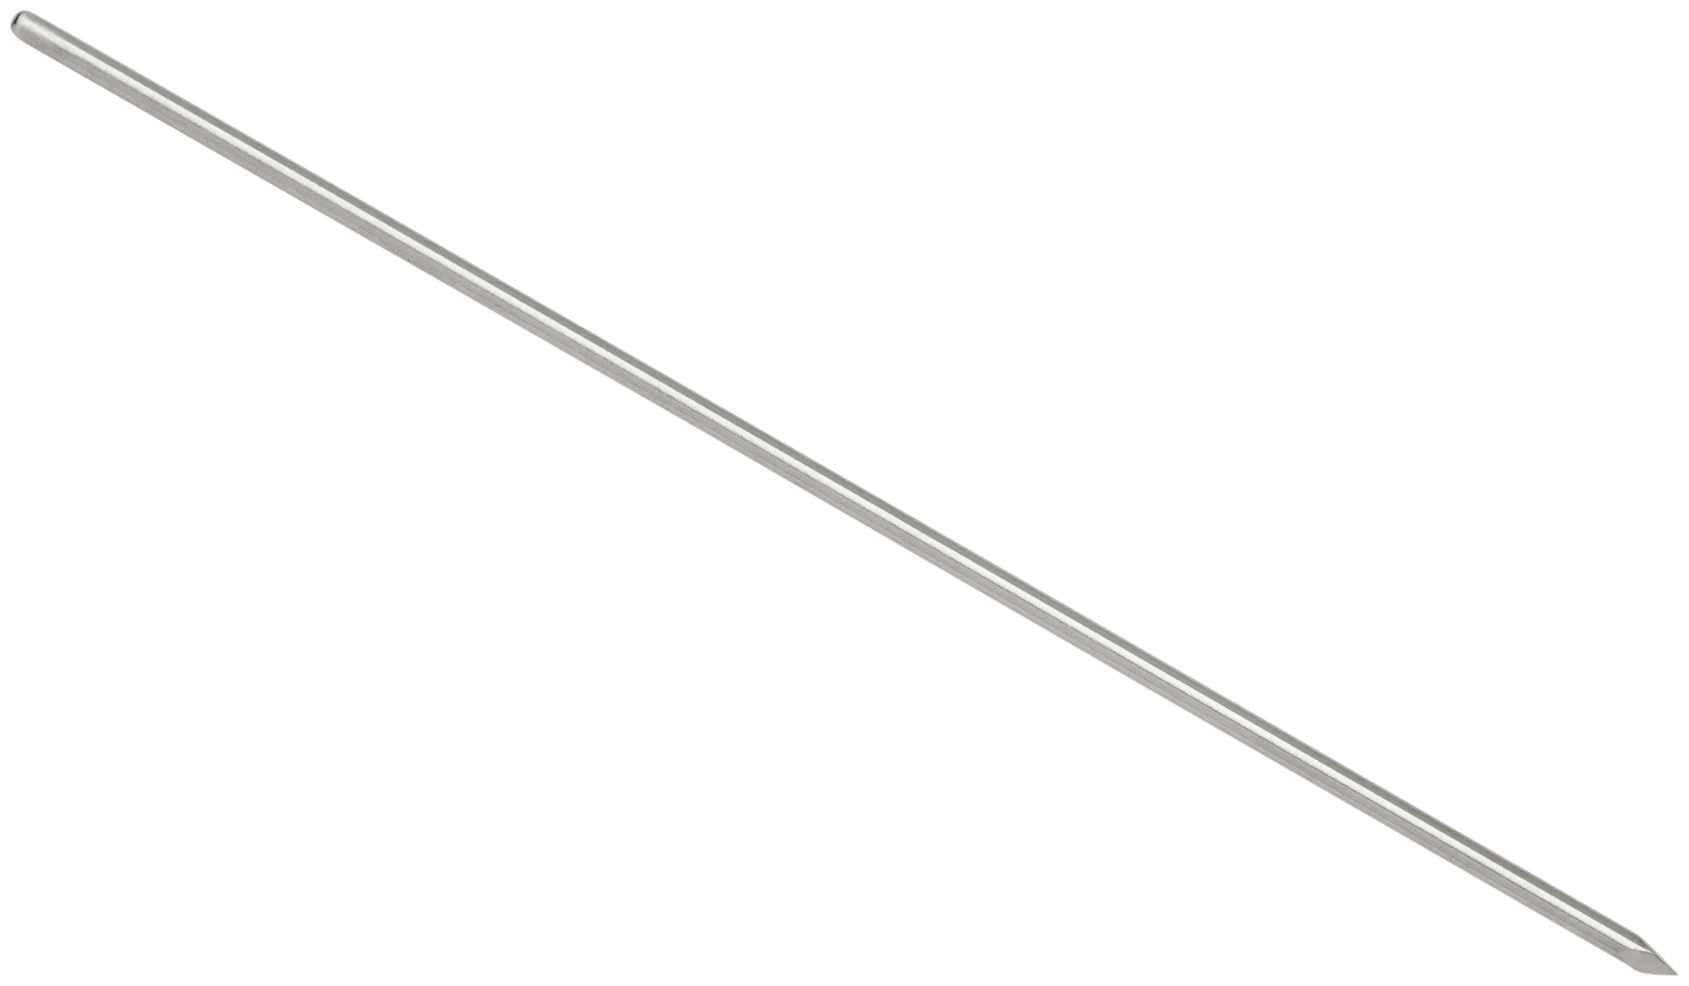 Kirschner Wire, 1.6 mm, qty. 2